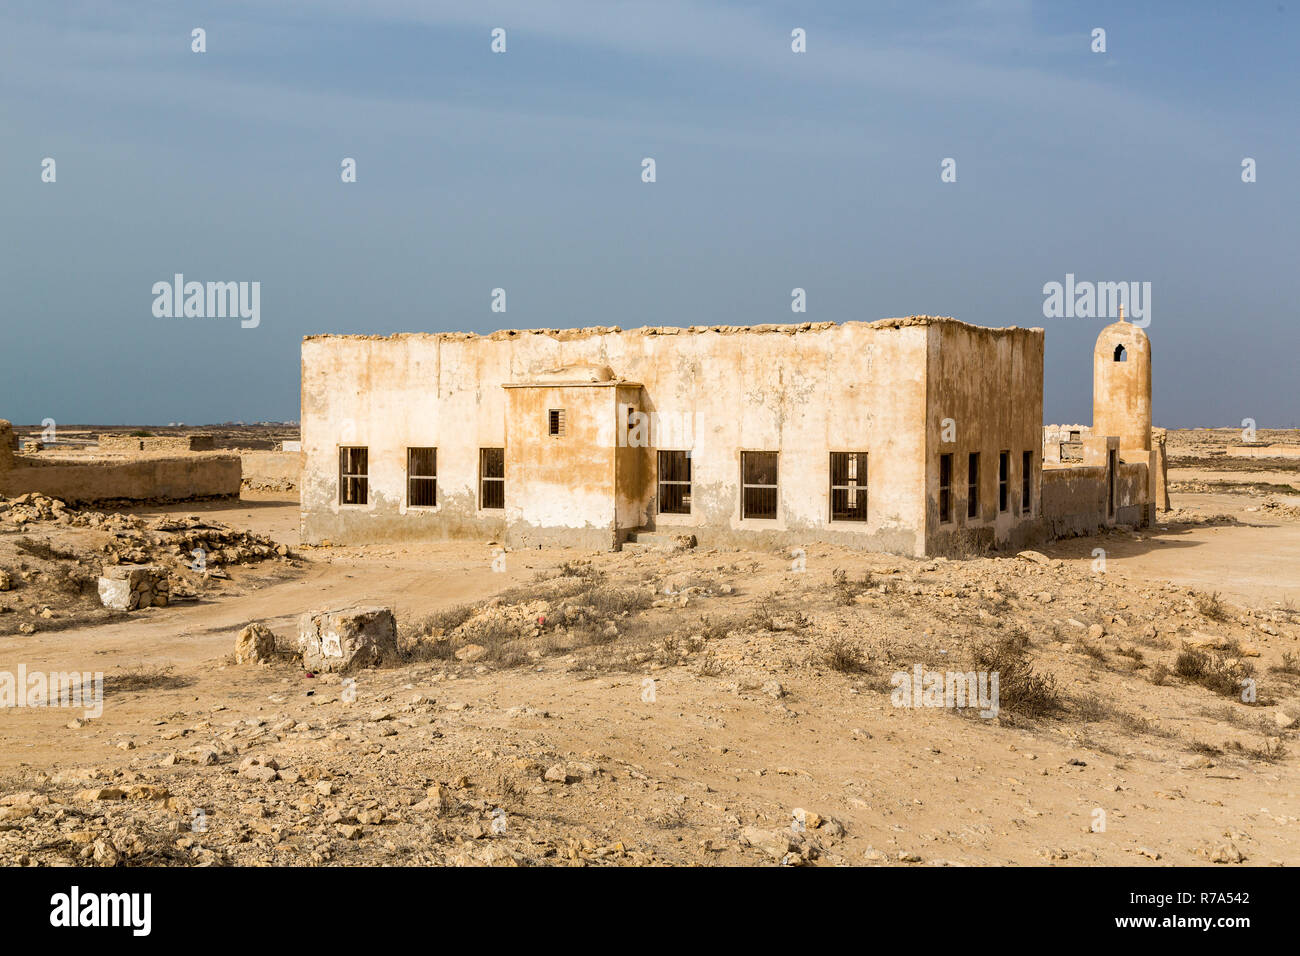 Rovinato antica madreperlante araba e la cittadina di pescatori Al Jumail, in Qatar. Il deserto a Costa del Golfo Persico. Minareto. Villaggio deserta. Cumulo di pietre Foto Stock